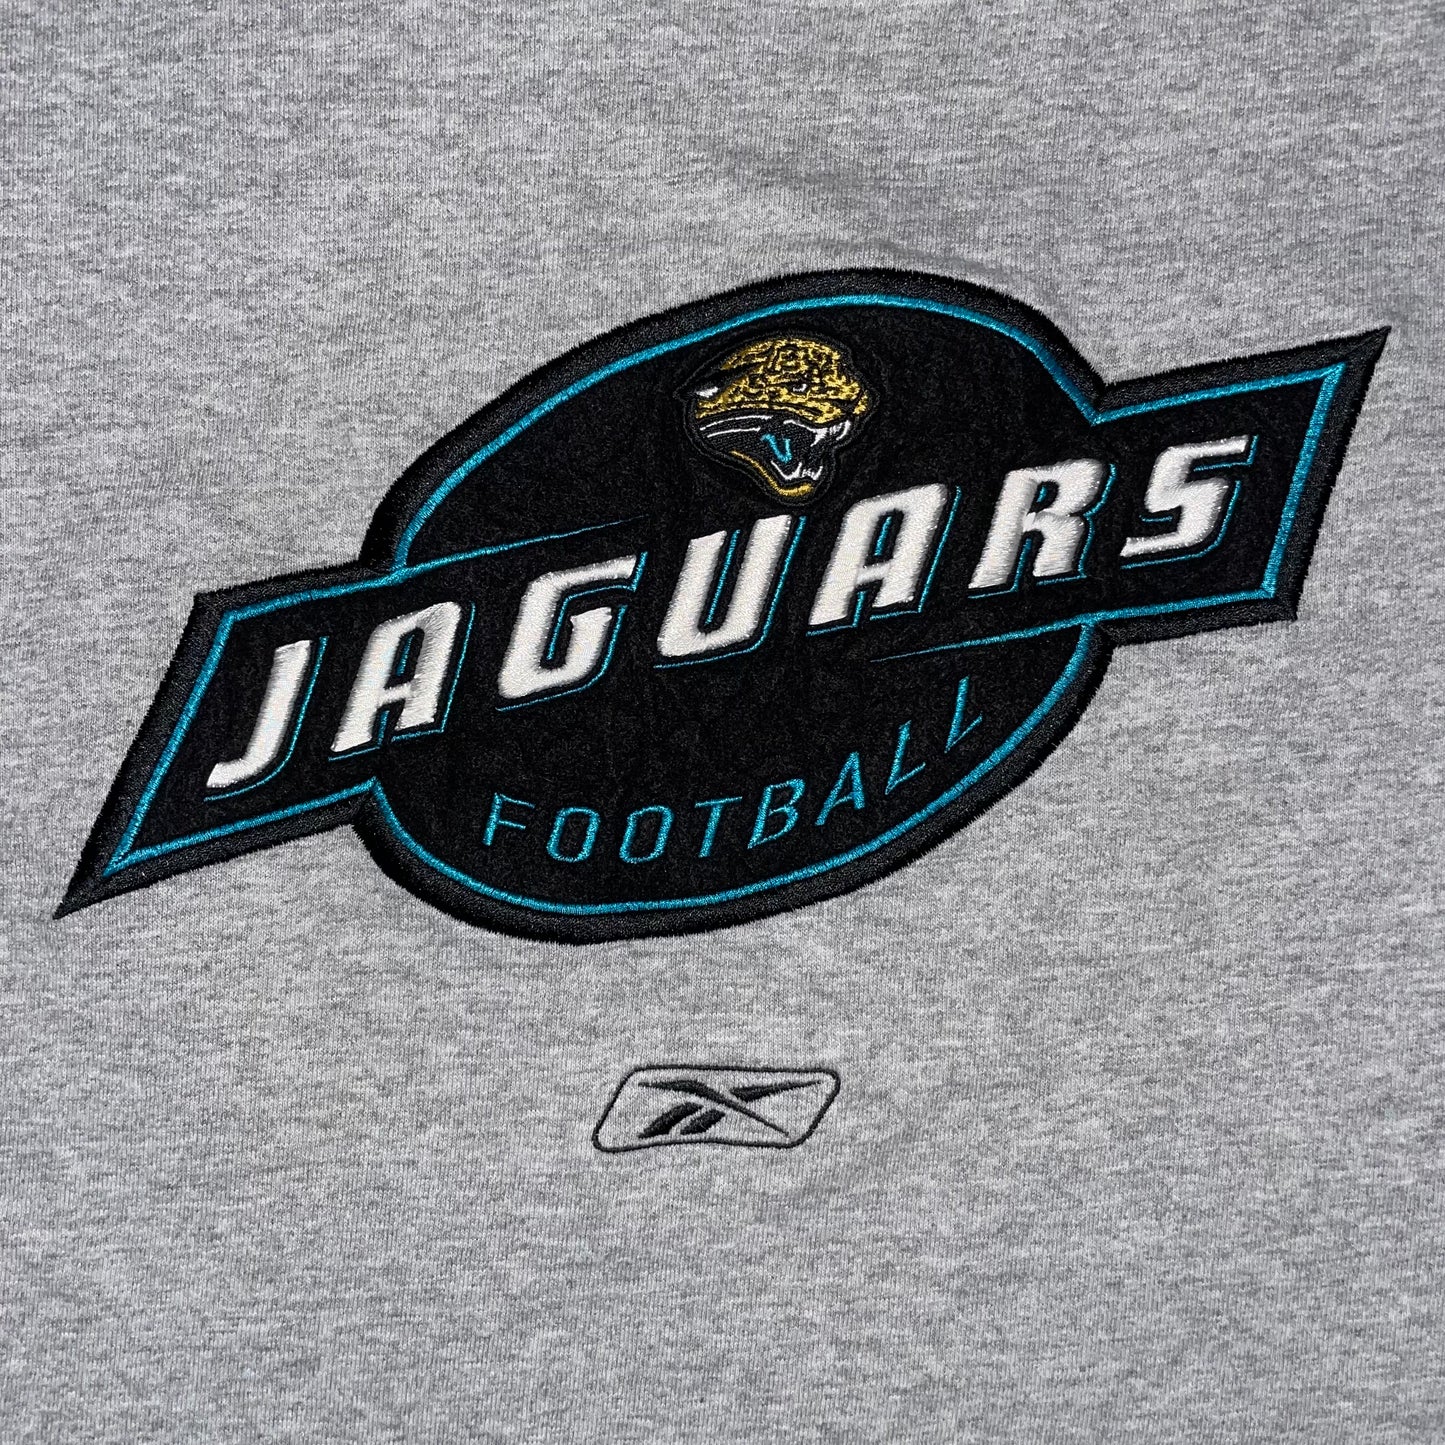 Jacksonville Jaguars EMBROIDERED shirt size LARGE